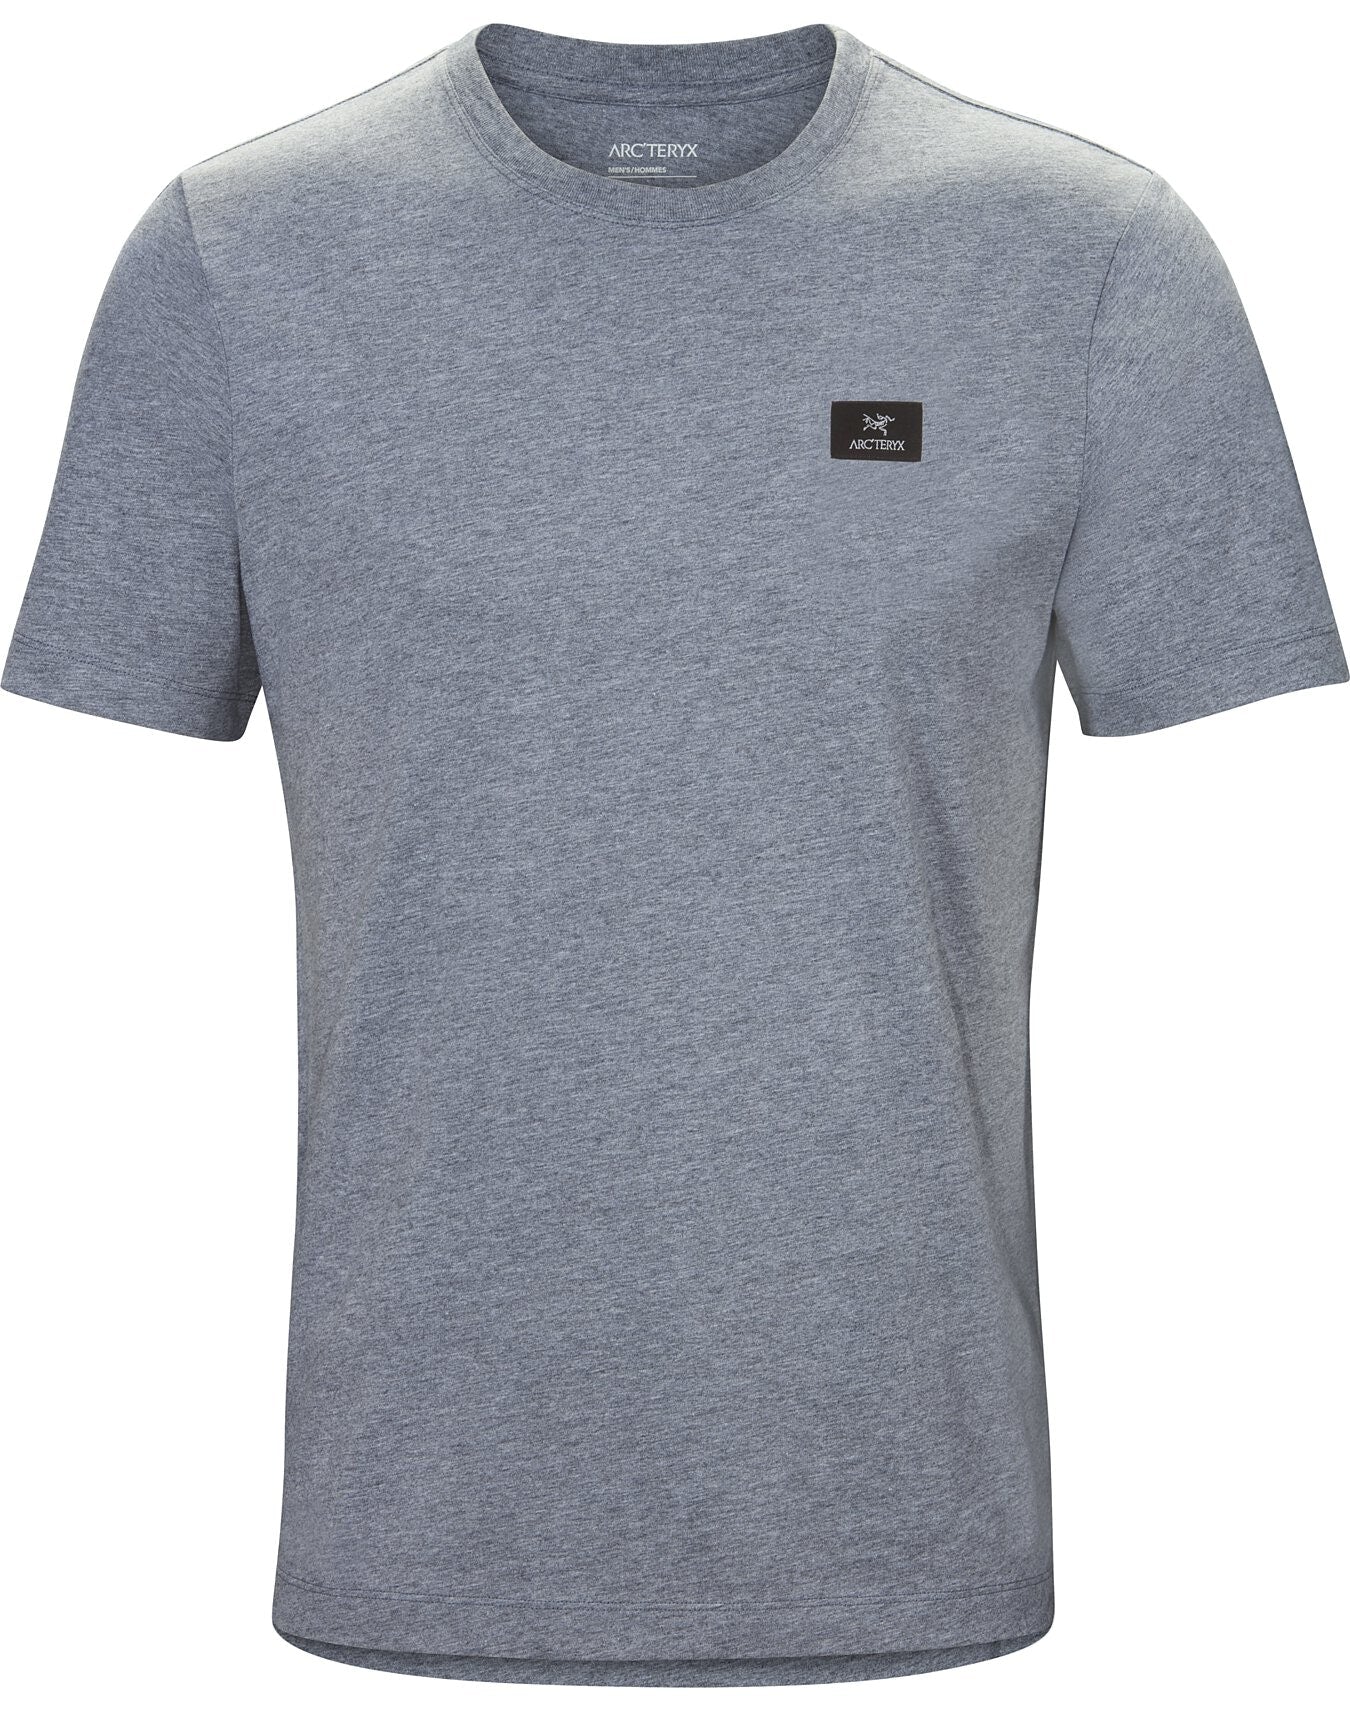 Arc'teryx Emblem Patch Short Sleeve T-Shirt - Men's | Altitude Sports